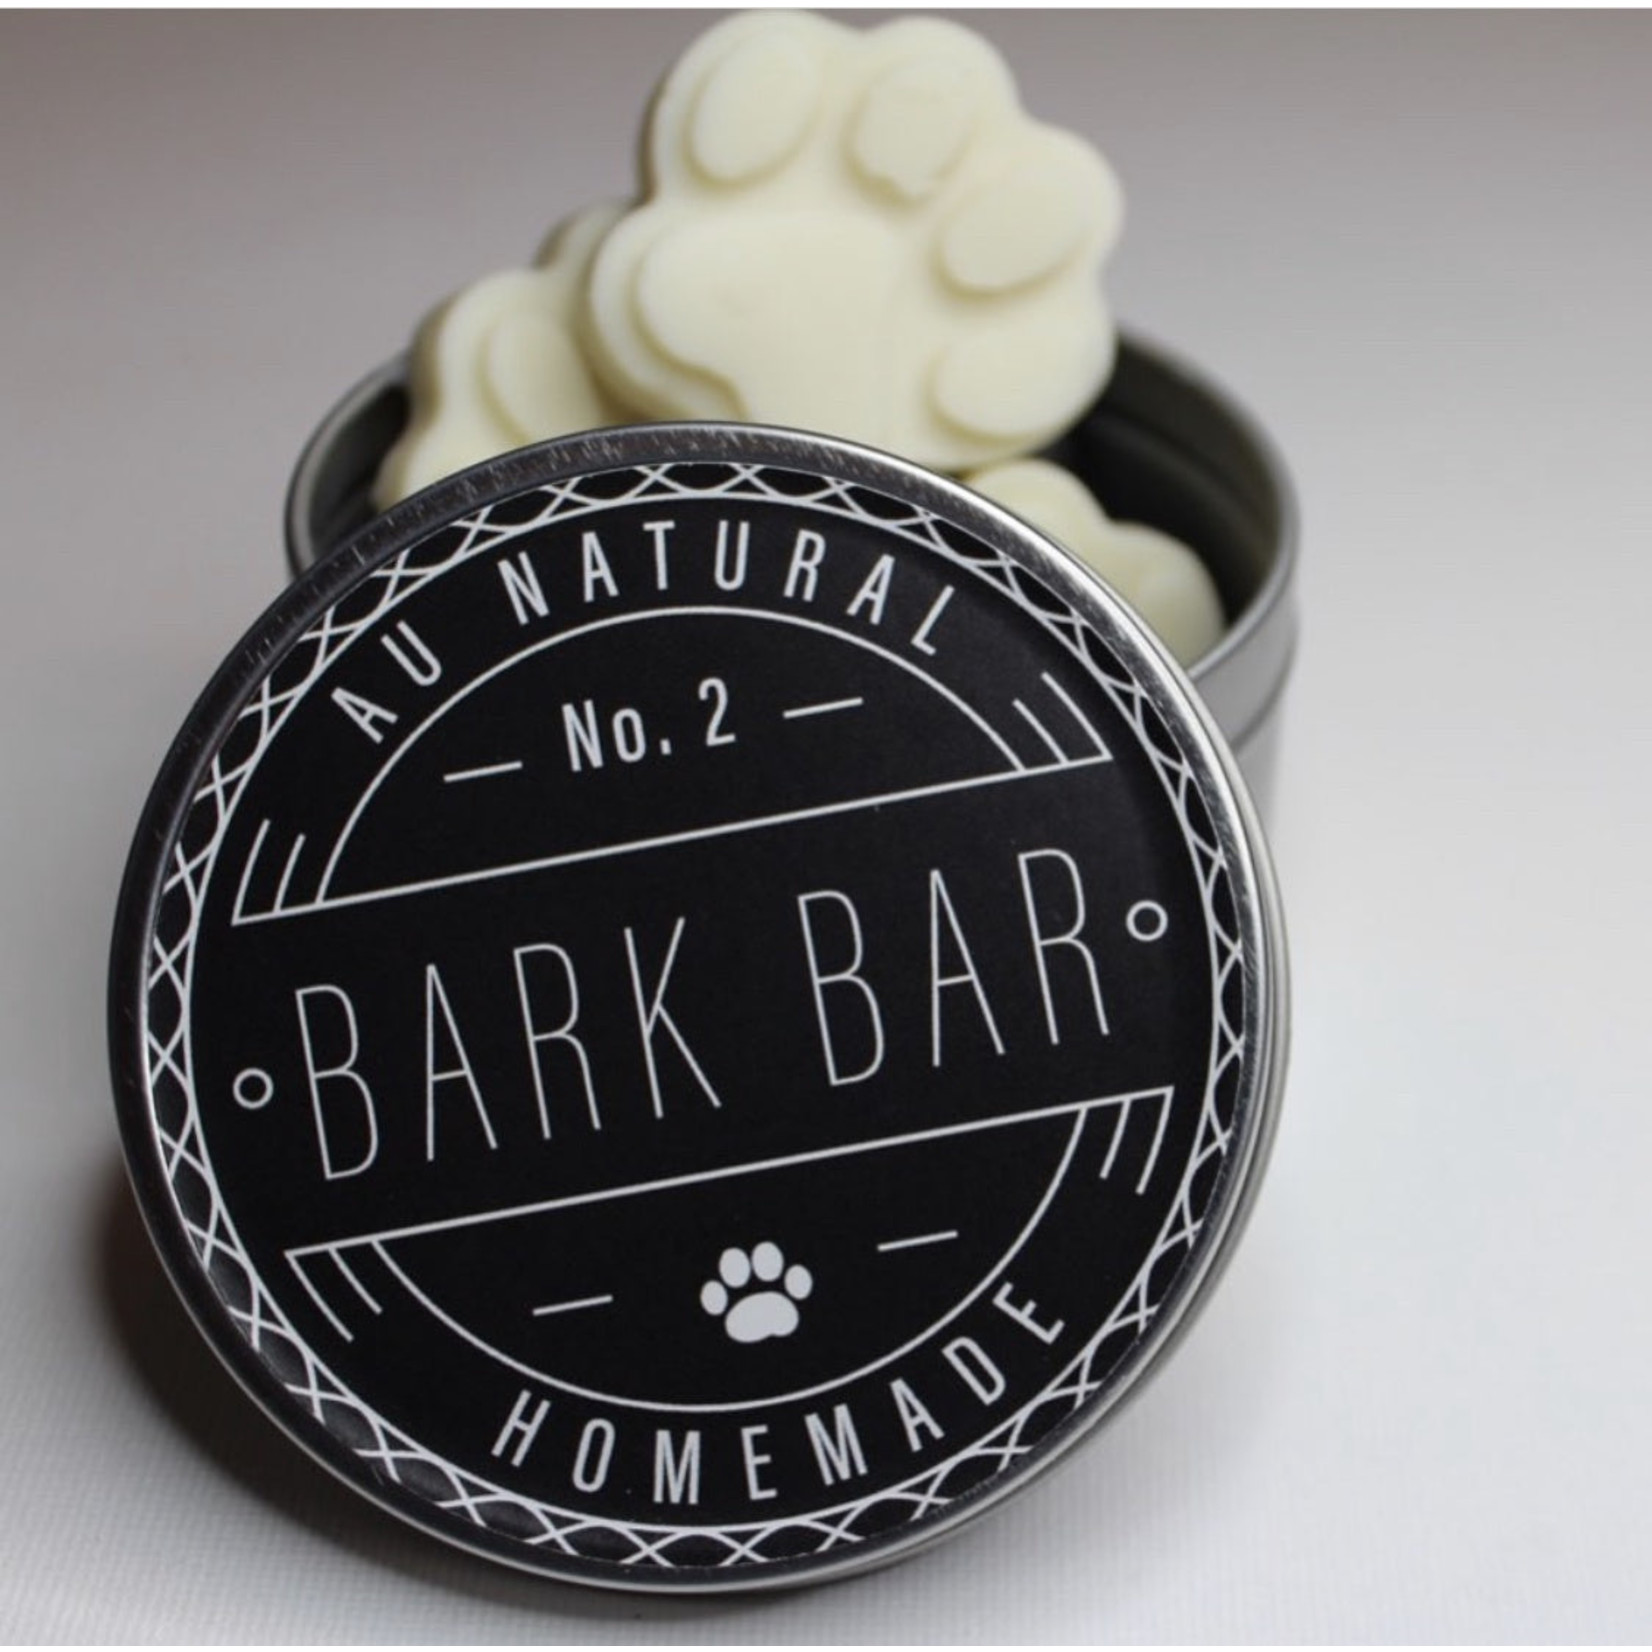 Bark Bars Bark Bars - Homemade 2 oz